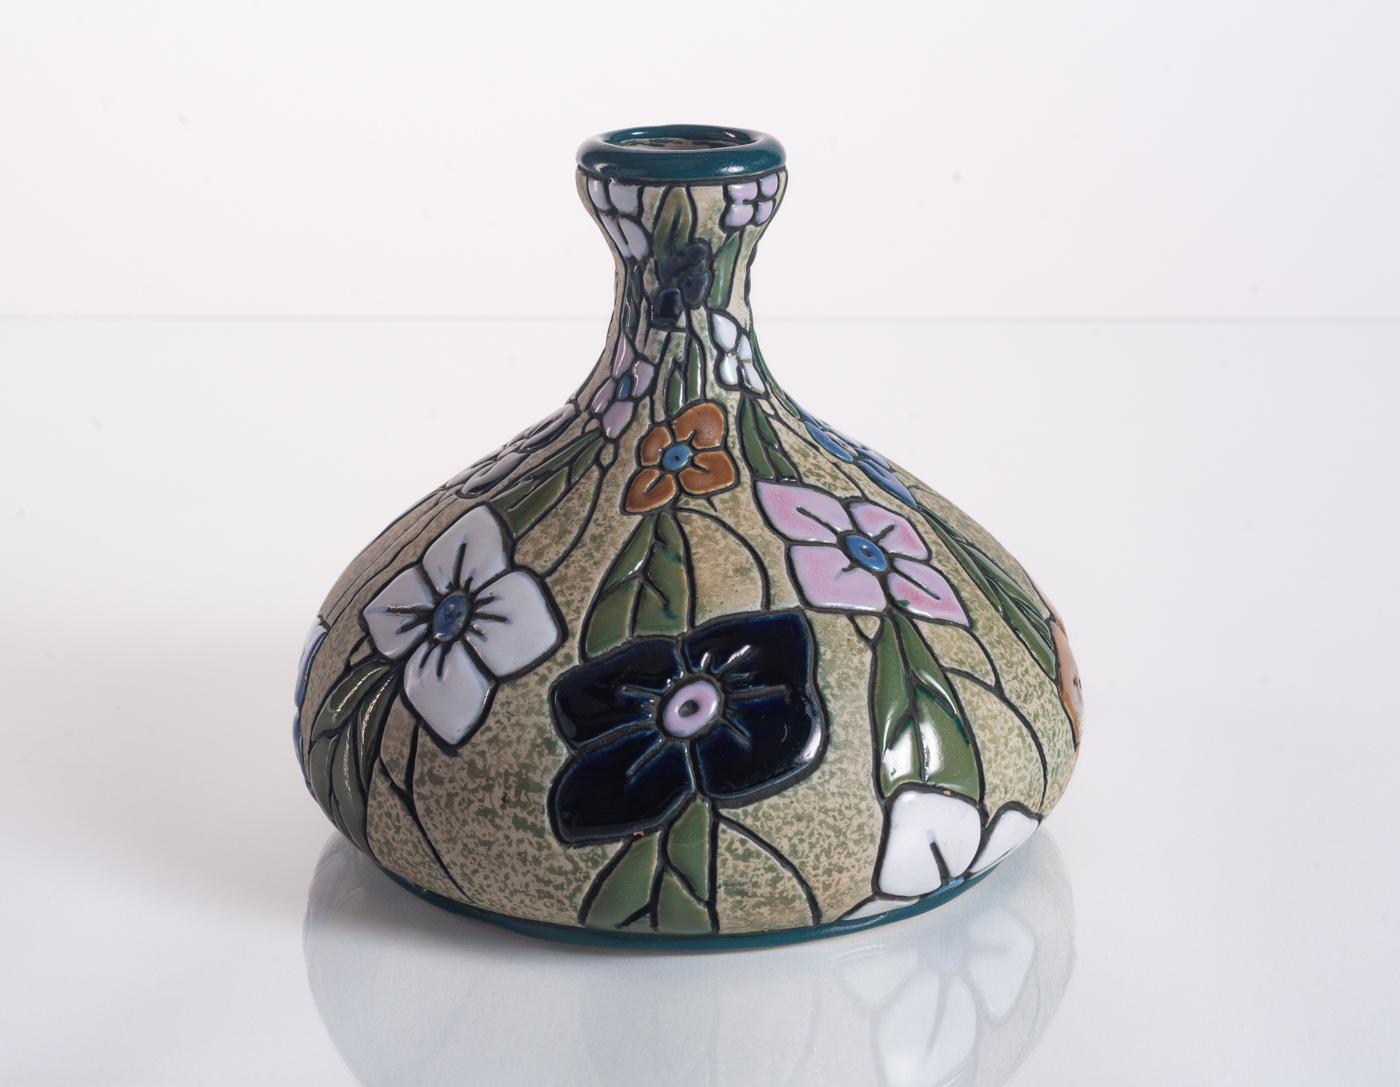 Eine farbenfrohe Keramikvase mit handgemalten Blumen in leuchtender Cloisonné-Emaillierung. Amphora im Sockel gestempelt und nummeriert.

Riessner, Stellmacher und Kessel (RStK), später bekannt als Amphora, begann 1892 in Turn-Teplitz, Österreich,